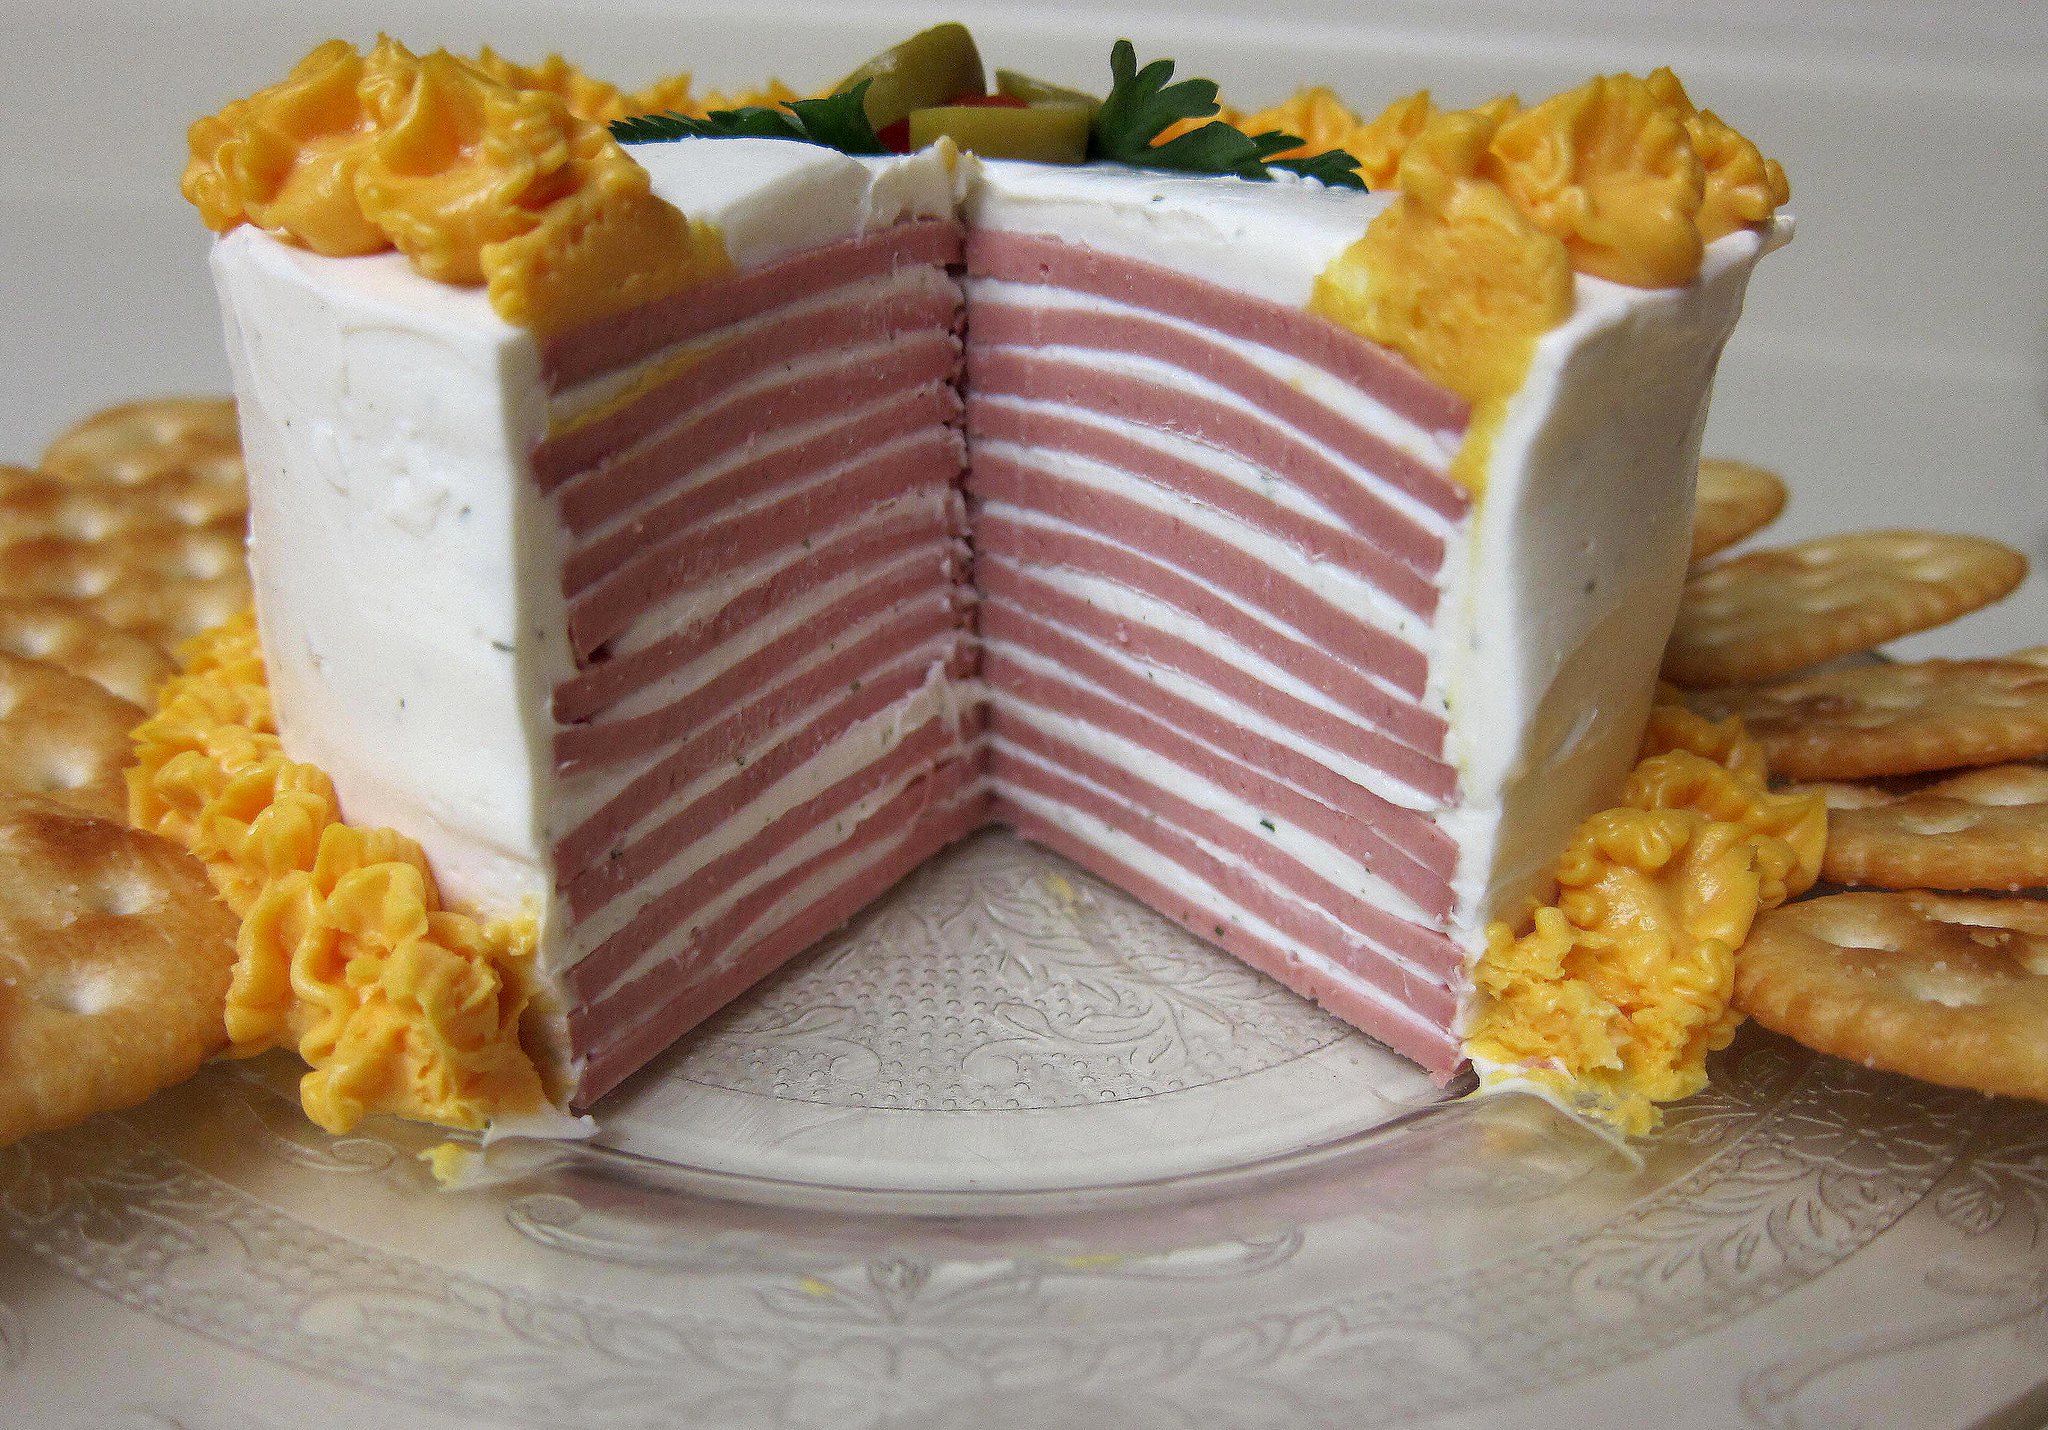 A Bologna cake | Source: Flickr